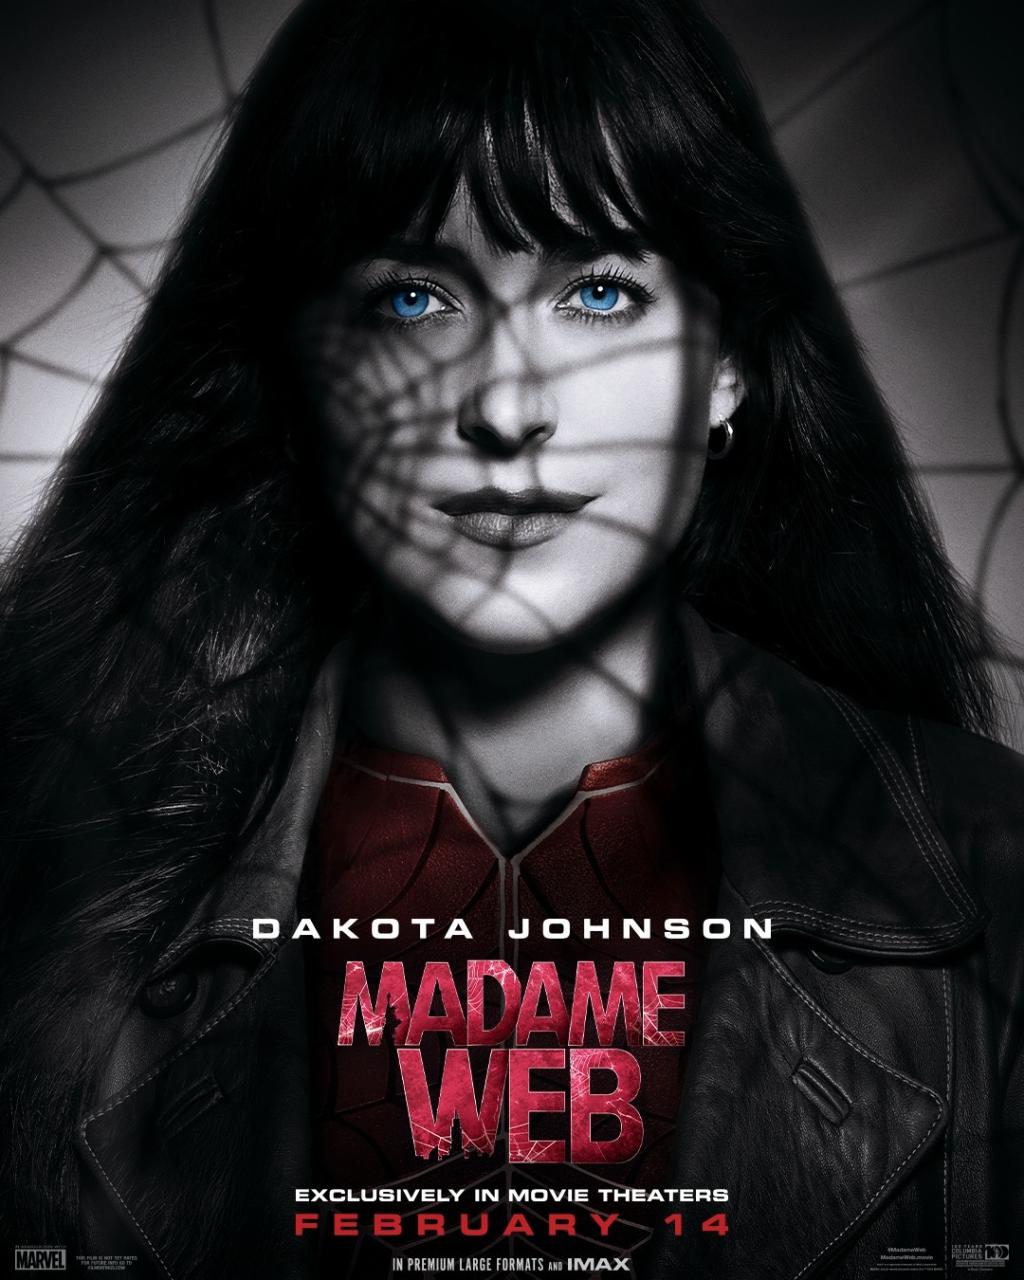 漫威电影《蜘蛛夫人》释出最新预告及角色海报预定2/14 上映